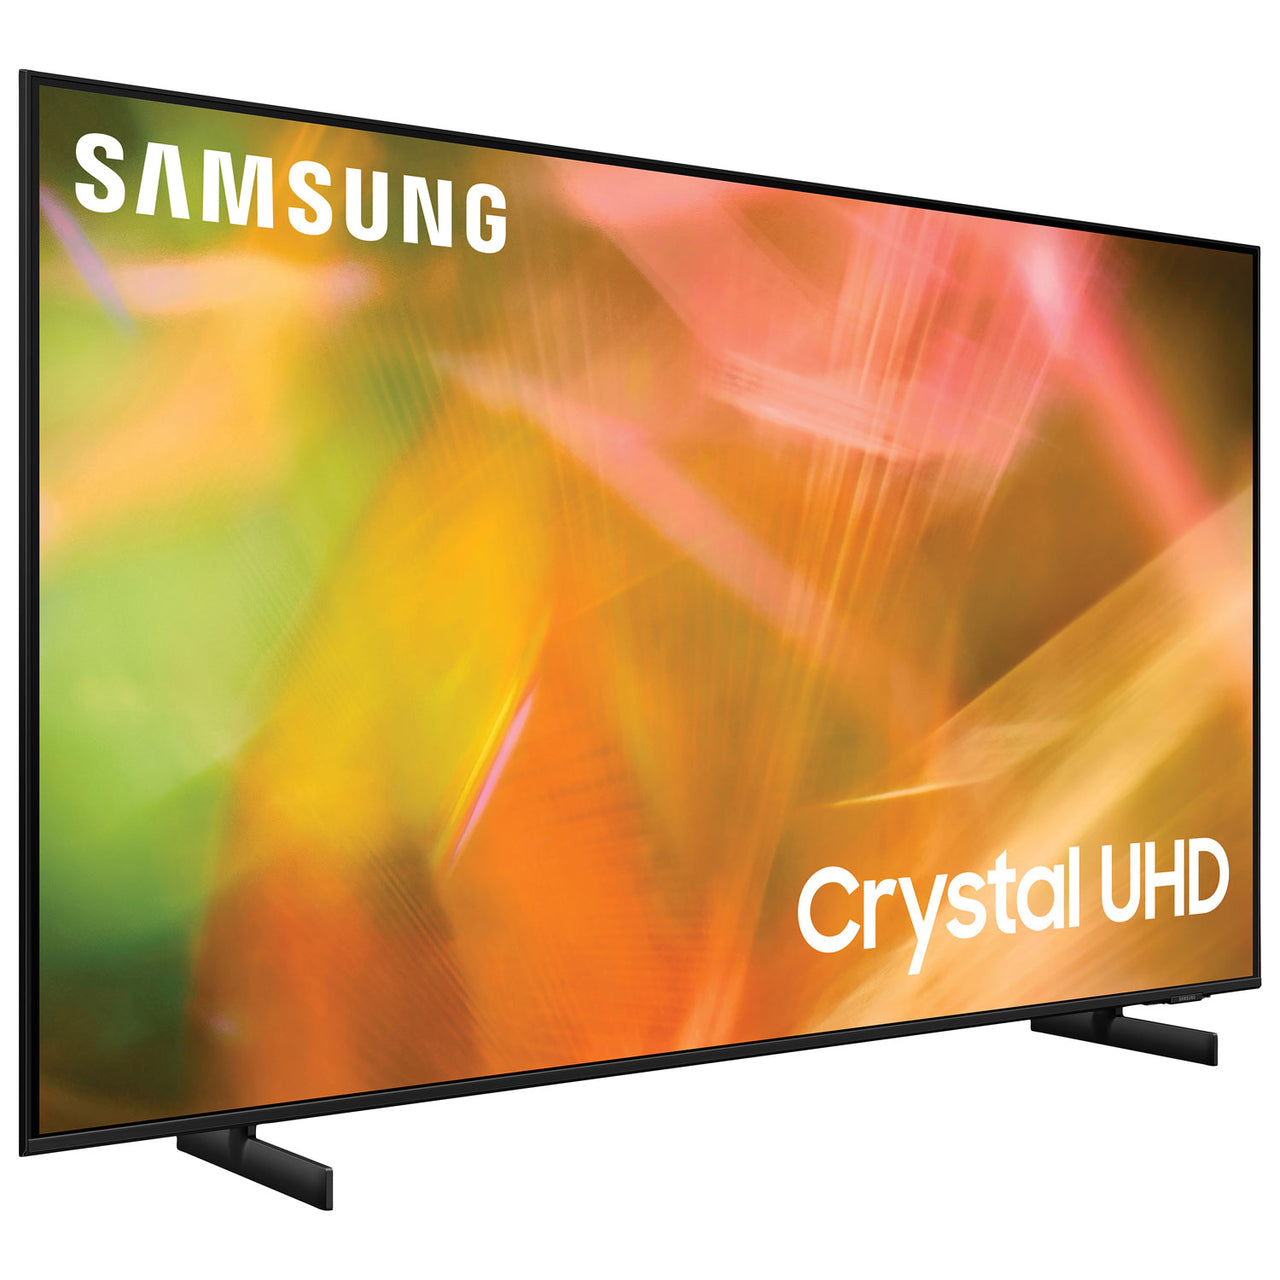 Samsung 65" 4K UHD HDR LED Tizen Smart TV (UN65AU8000FXZC) - 2021